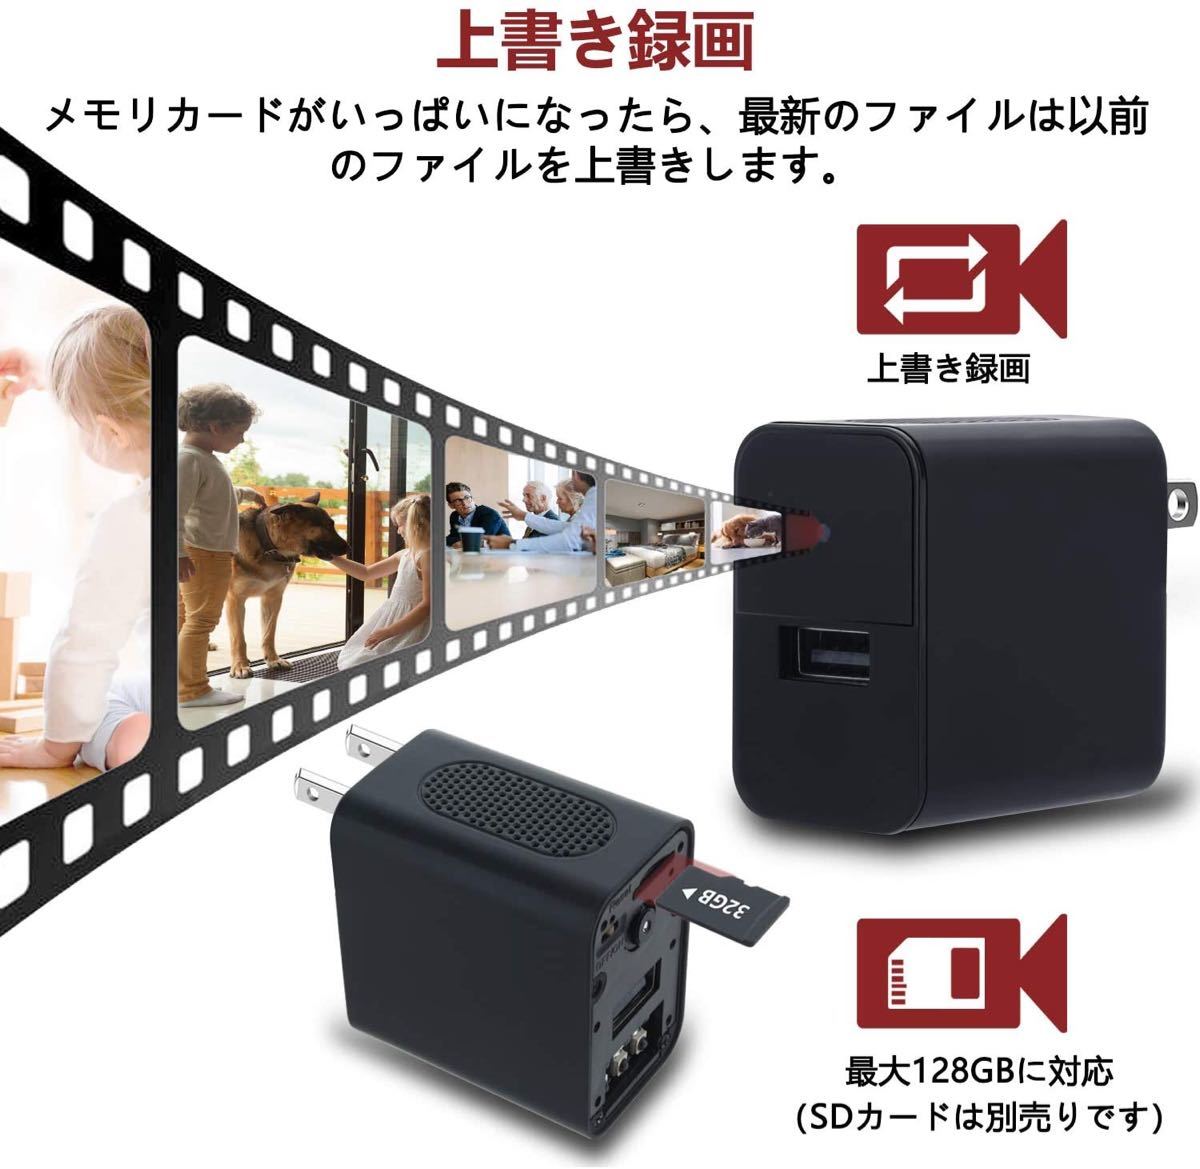 隠しカメラ 1080P HD 超小型カメラ 暗視機能搭載 スパカメラ イビデオ 赤外線 動体検知 盗撮 日本語取扱 黒 